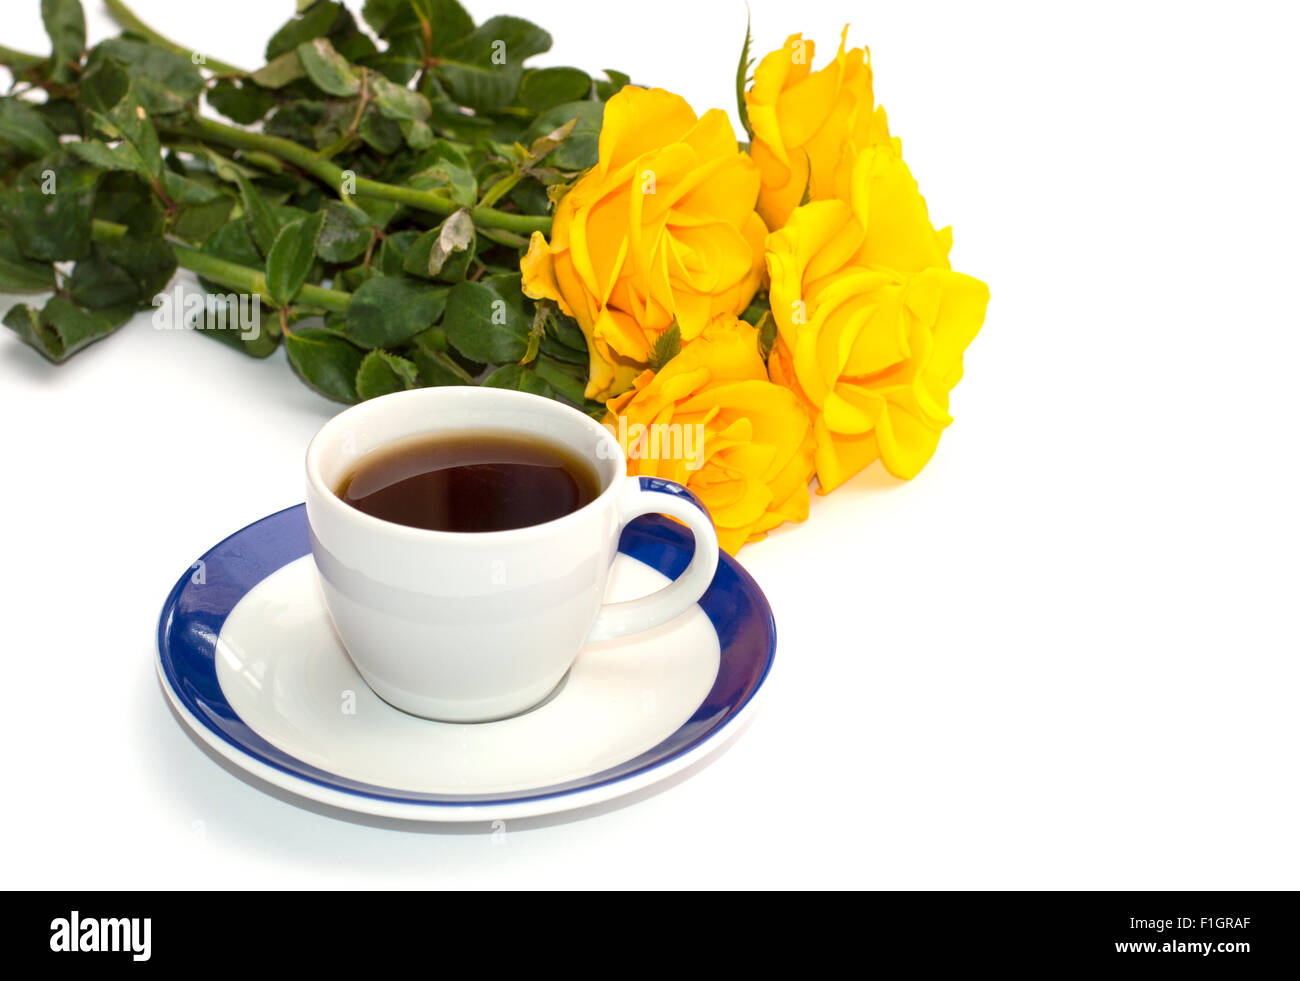 Magnifique bouquet de roses jaunes et tasse de café, d'isoler Banque D'Images